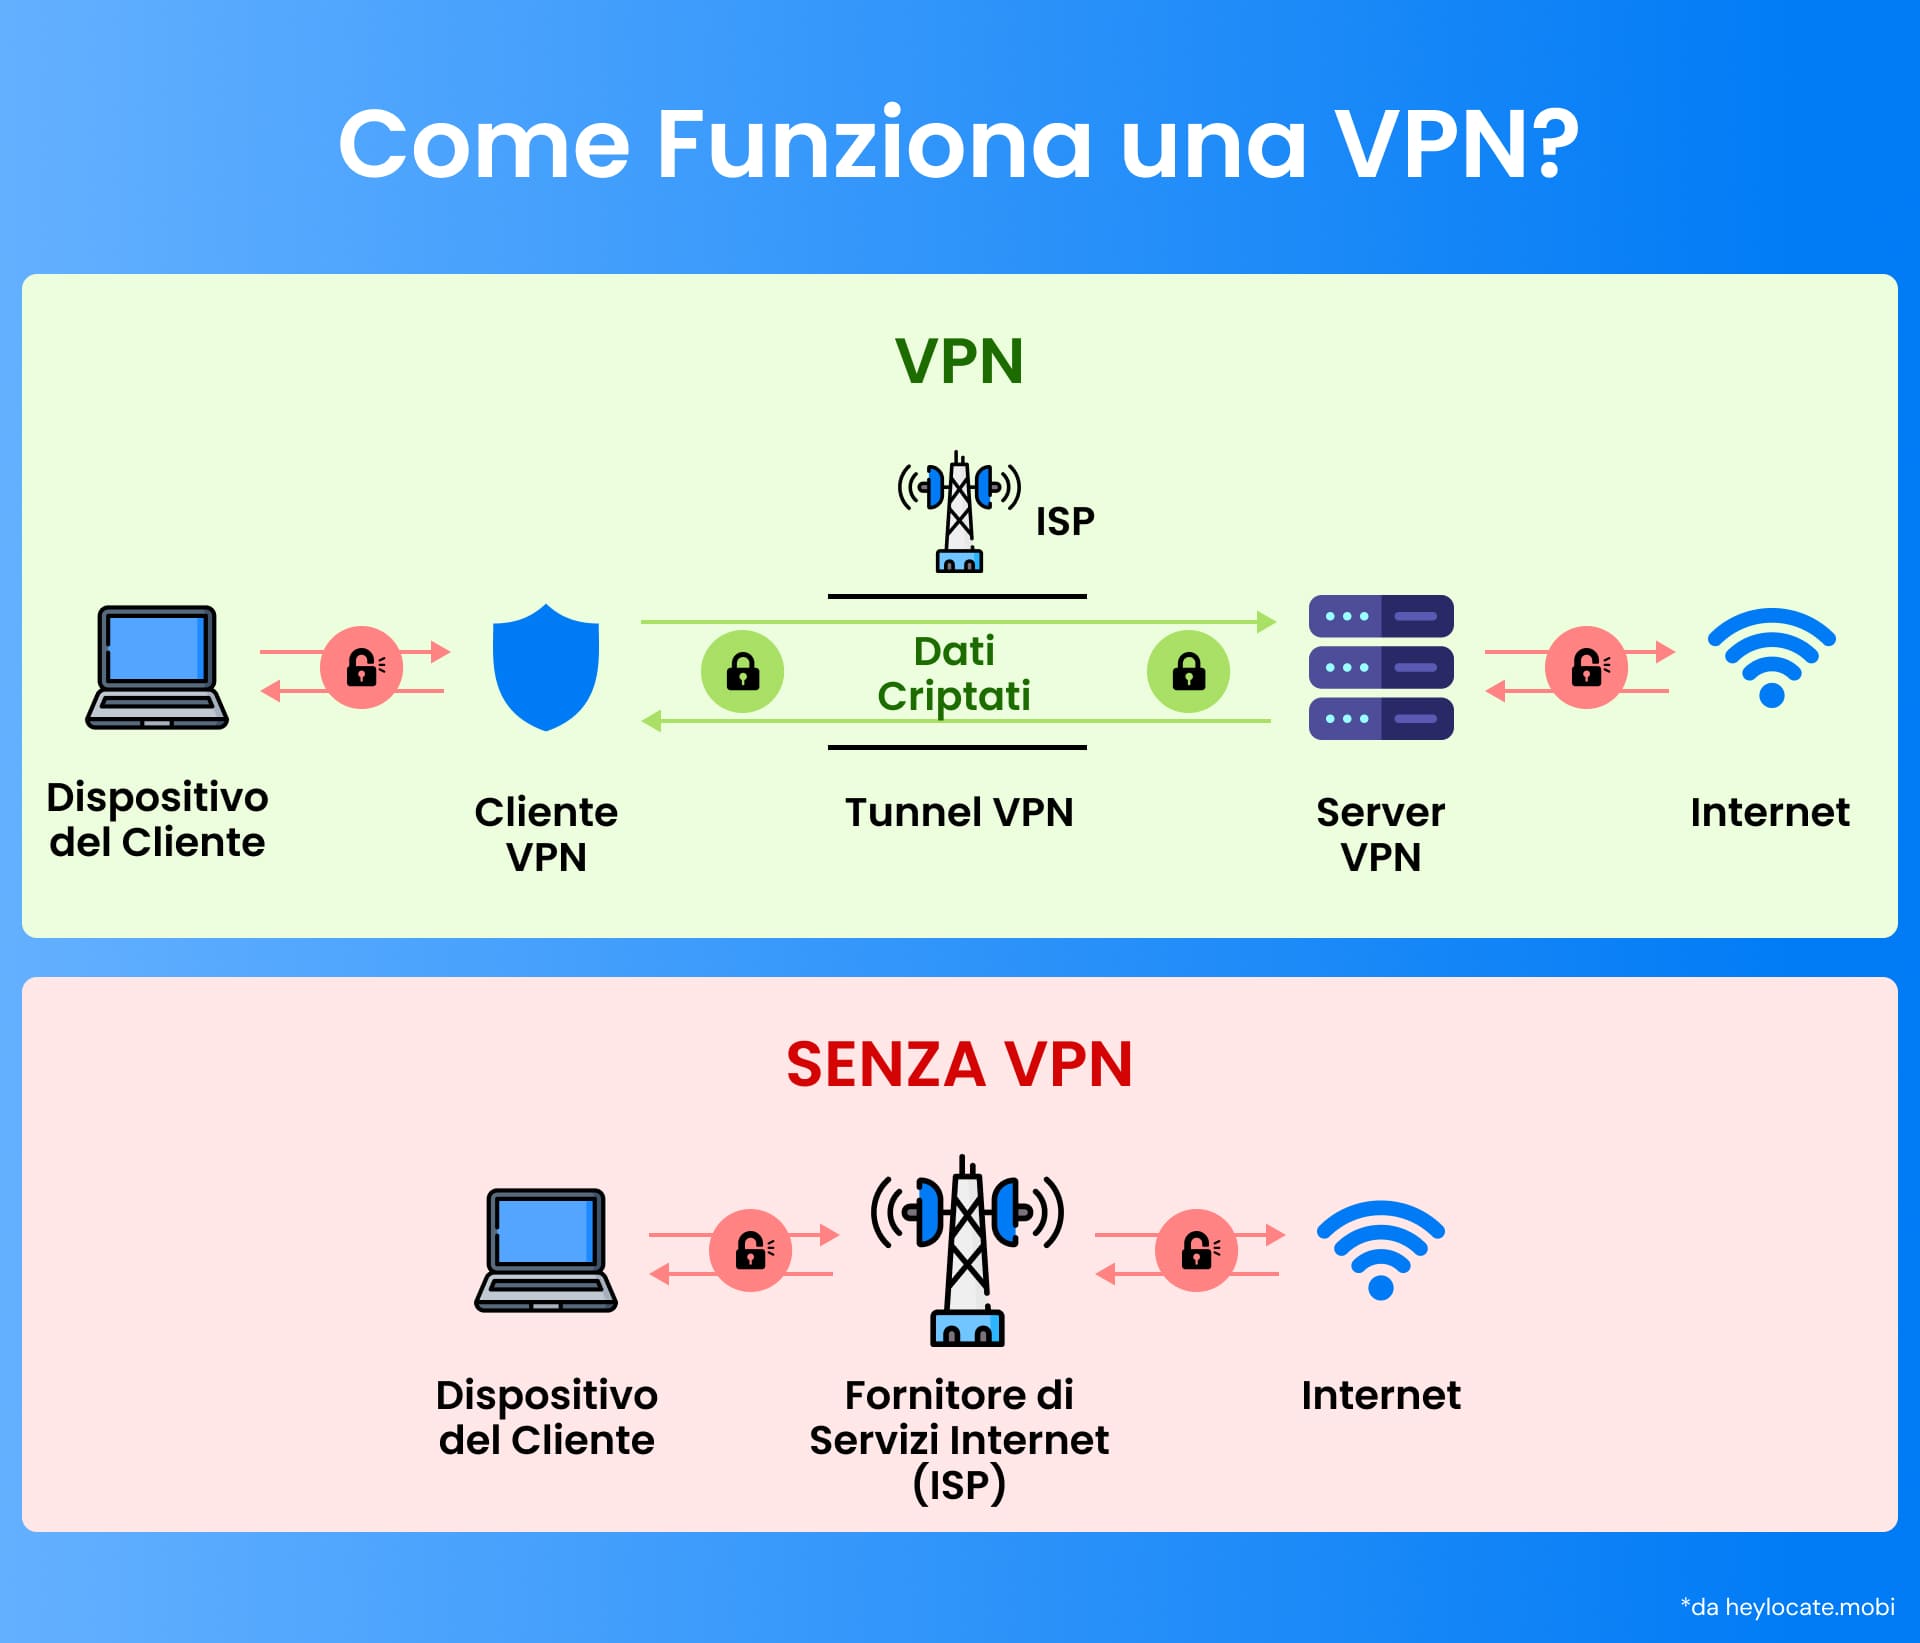 Infografica che illustra il processo di crittografia e instradamento dei dati di una VPN rispetto a una connessione Internet diretta